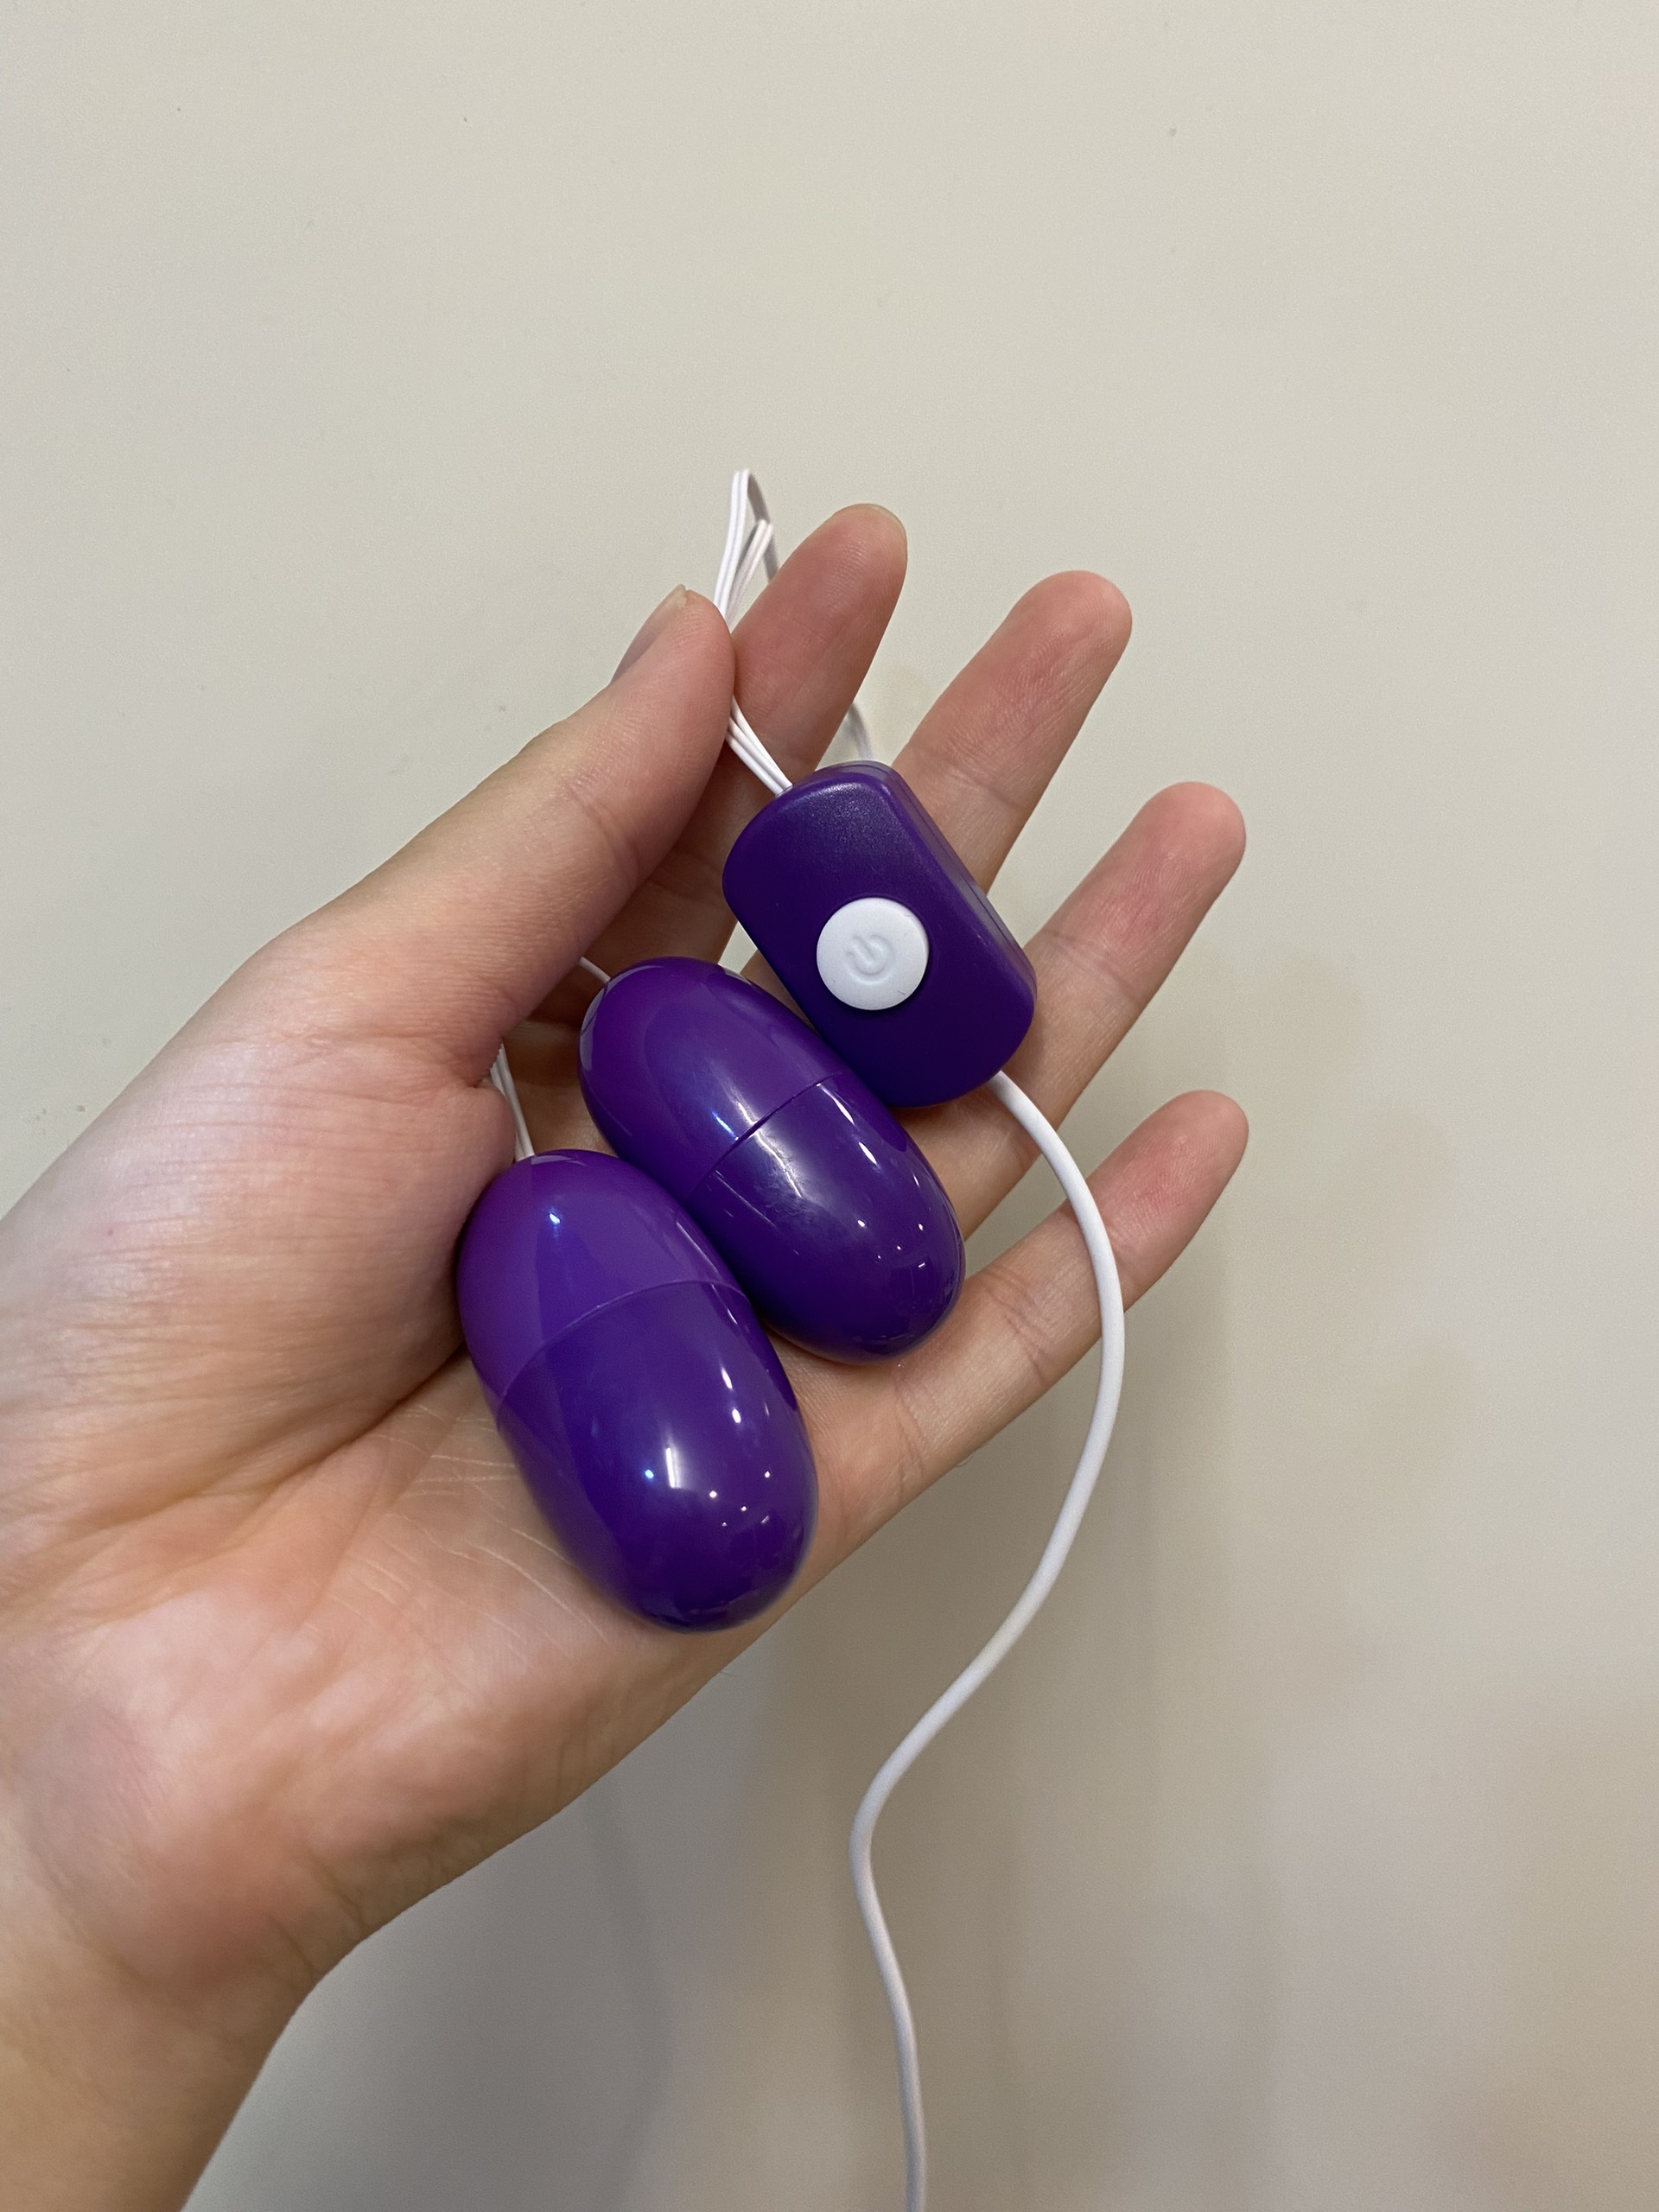 Trứng rung 2 đầu tím, cắm USB, 16 chế độ massage